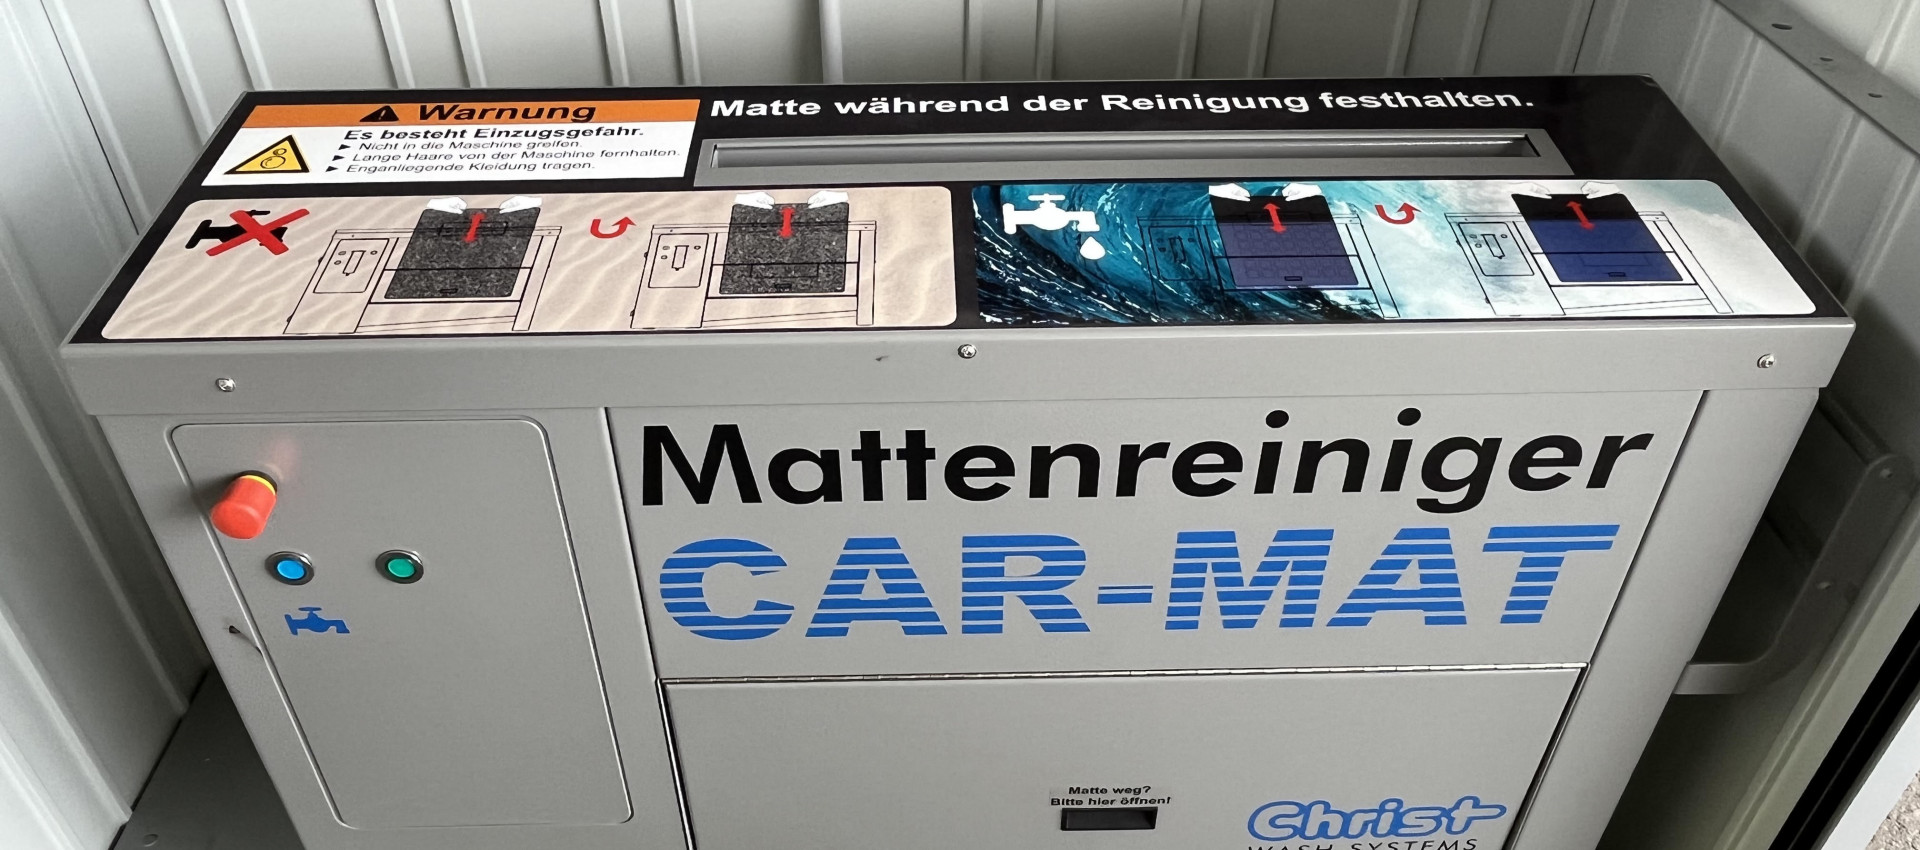 Mattenreiniger in Betrieb genommen, jetzt bei Günther Energie in Lahr